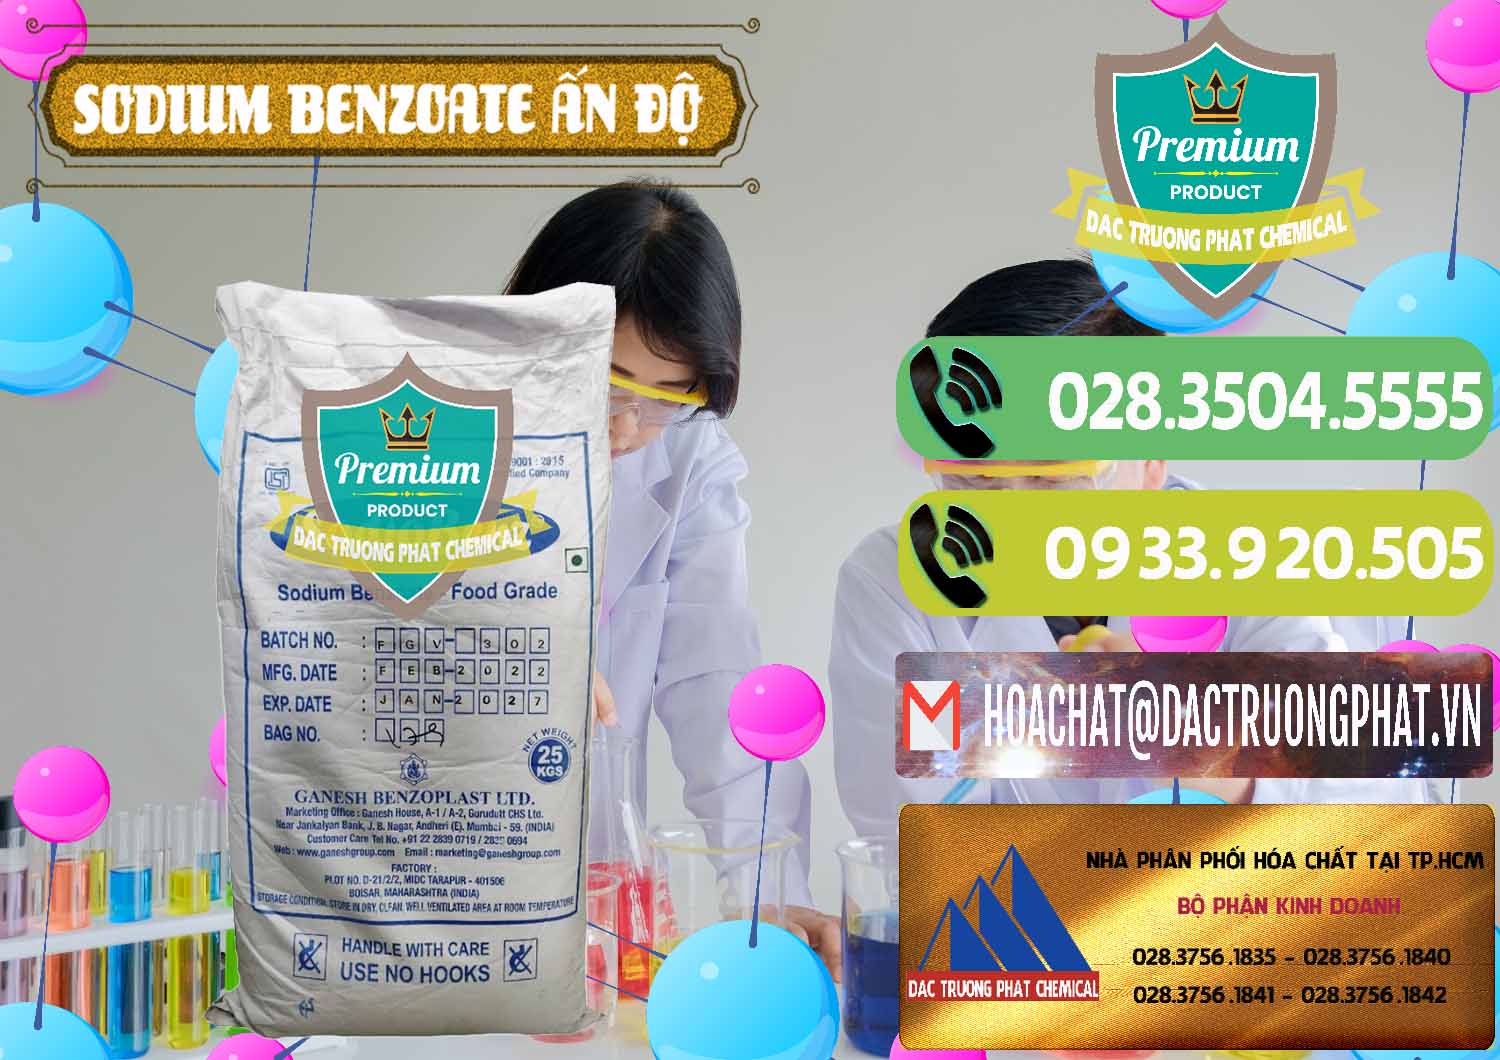 Chuyên kinh doanh và bán Sodium Benzoate - Mốc Bột Ấn Độ India - 0361 - Nhà nhập khẩu và phân phối hóa chất tại TP.HCM - hoachatmientay.vn